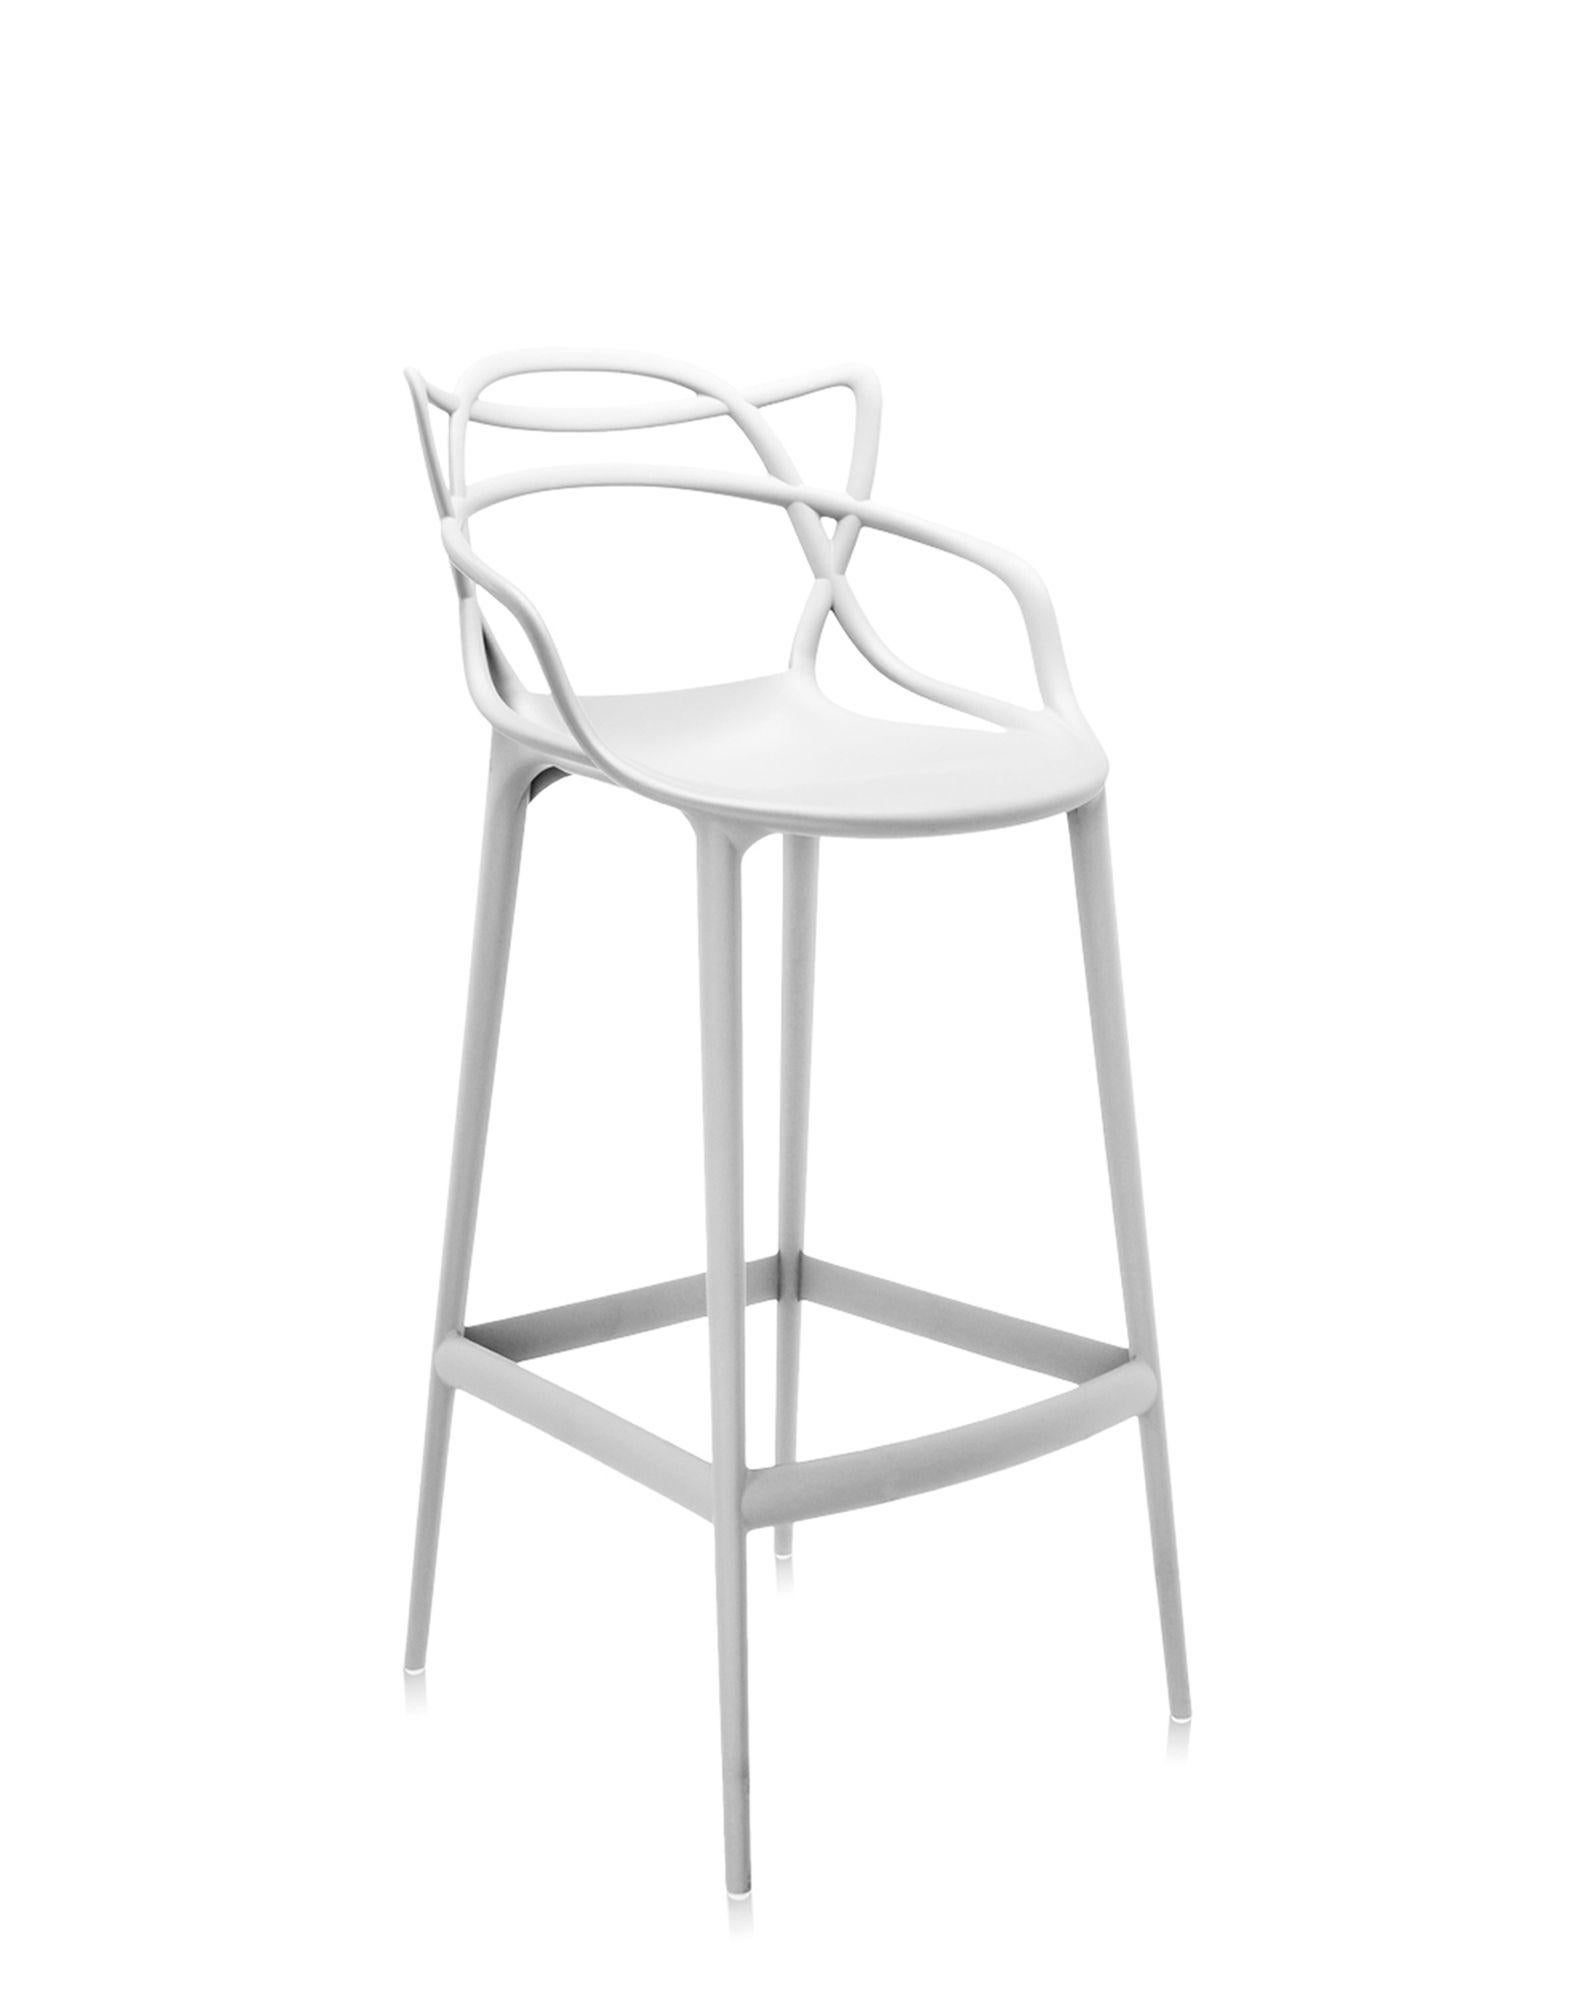 Kartell bietet auch eine Hocker-Version des Masters Stuhls an, der mit dem Good Design Award 2010 und dem Red Dot Award 2013 ausgezeichnet wurde und weltweit ein Bestseller ist. Die Beine sind verlängert und die Sitzfläche geschrumpft, aber der